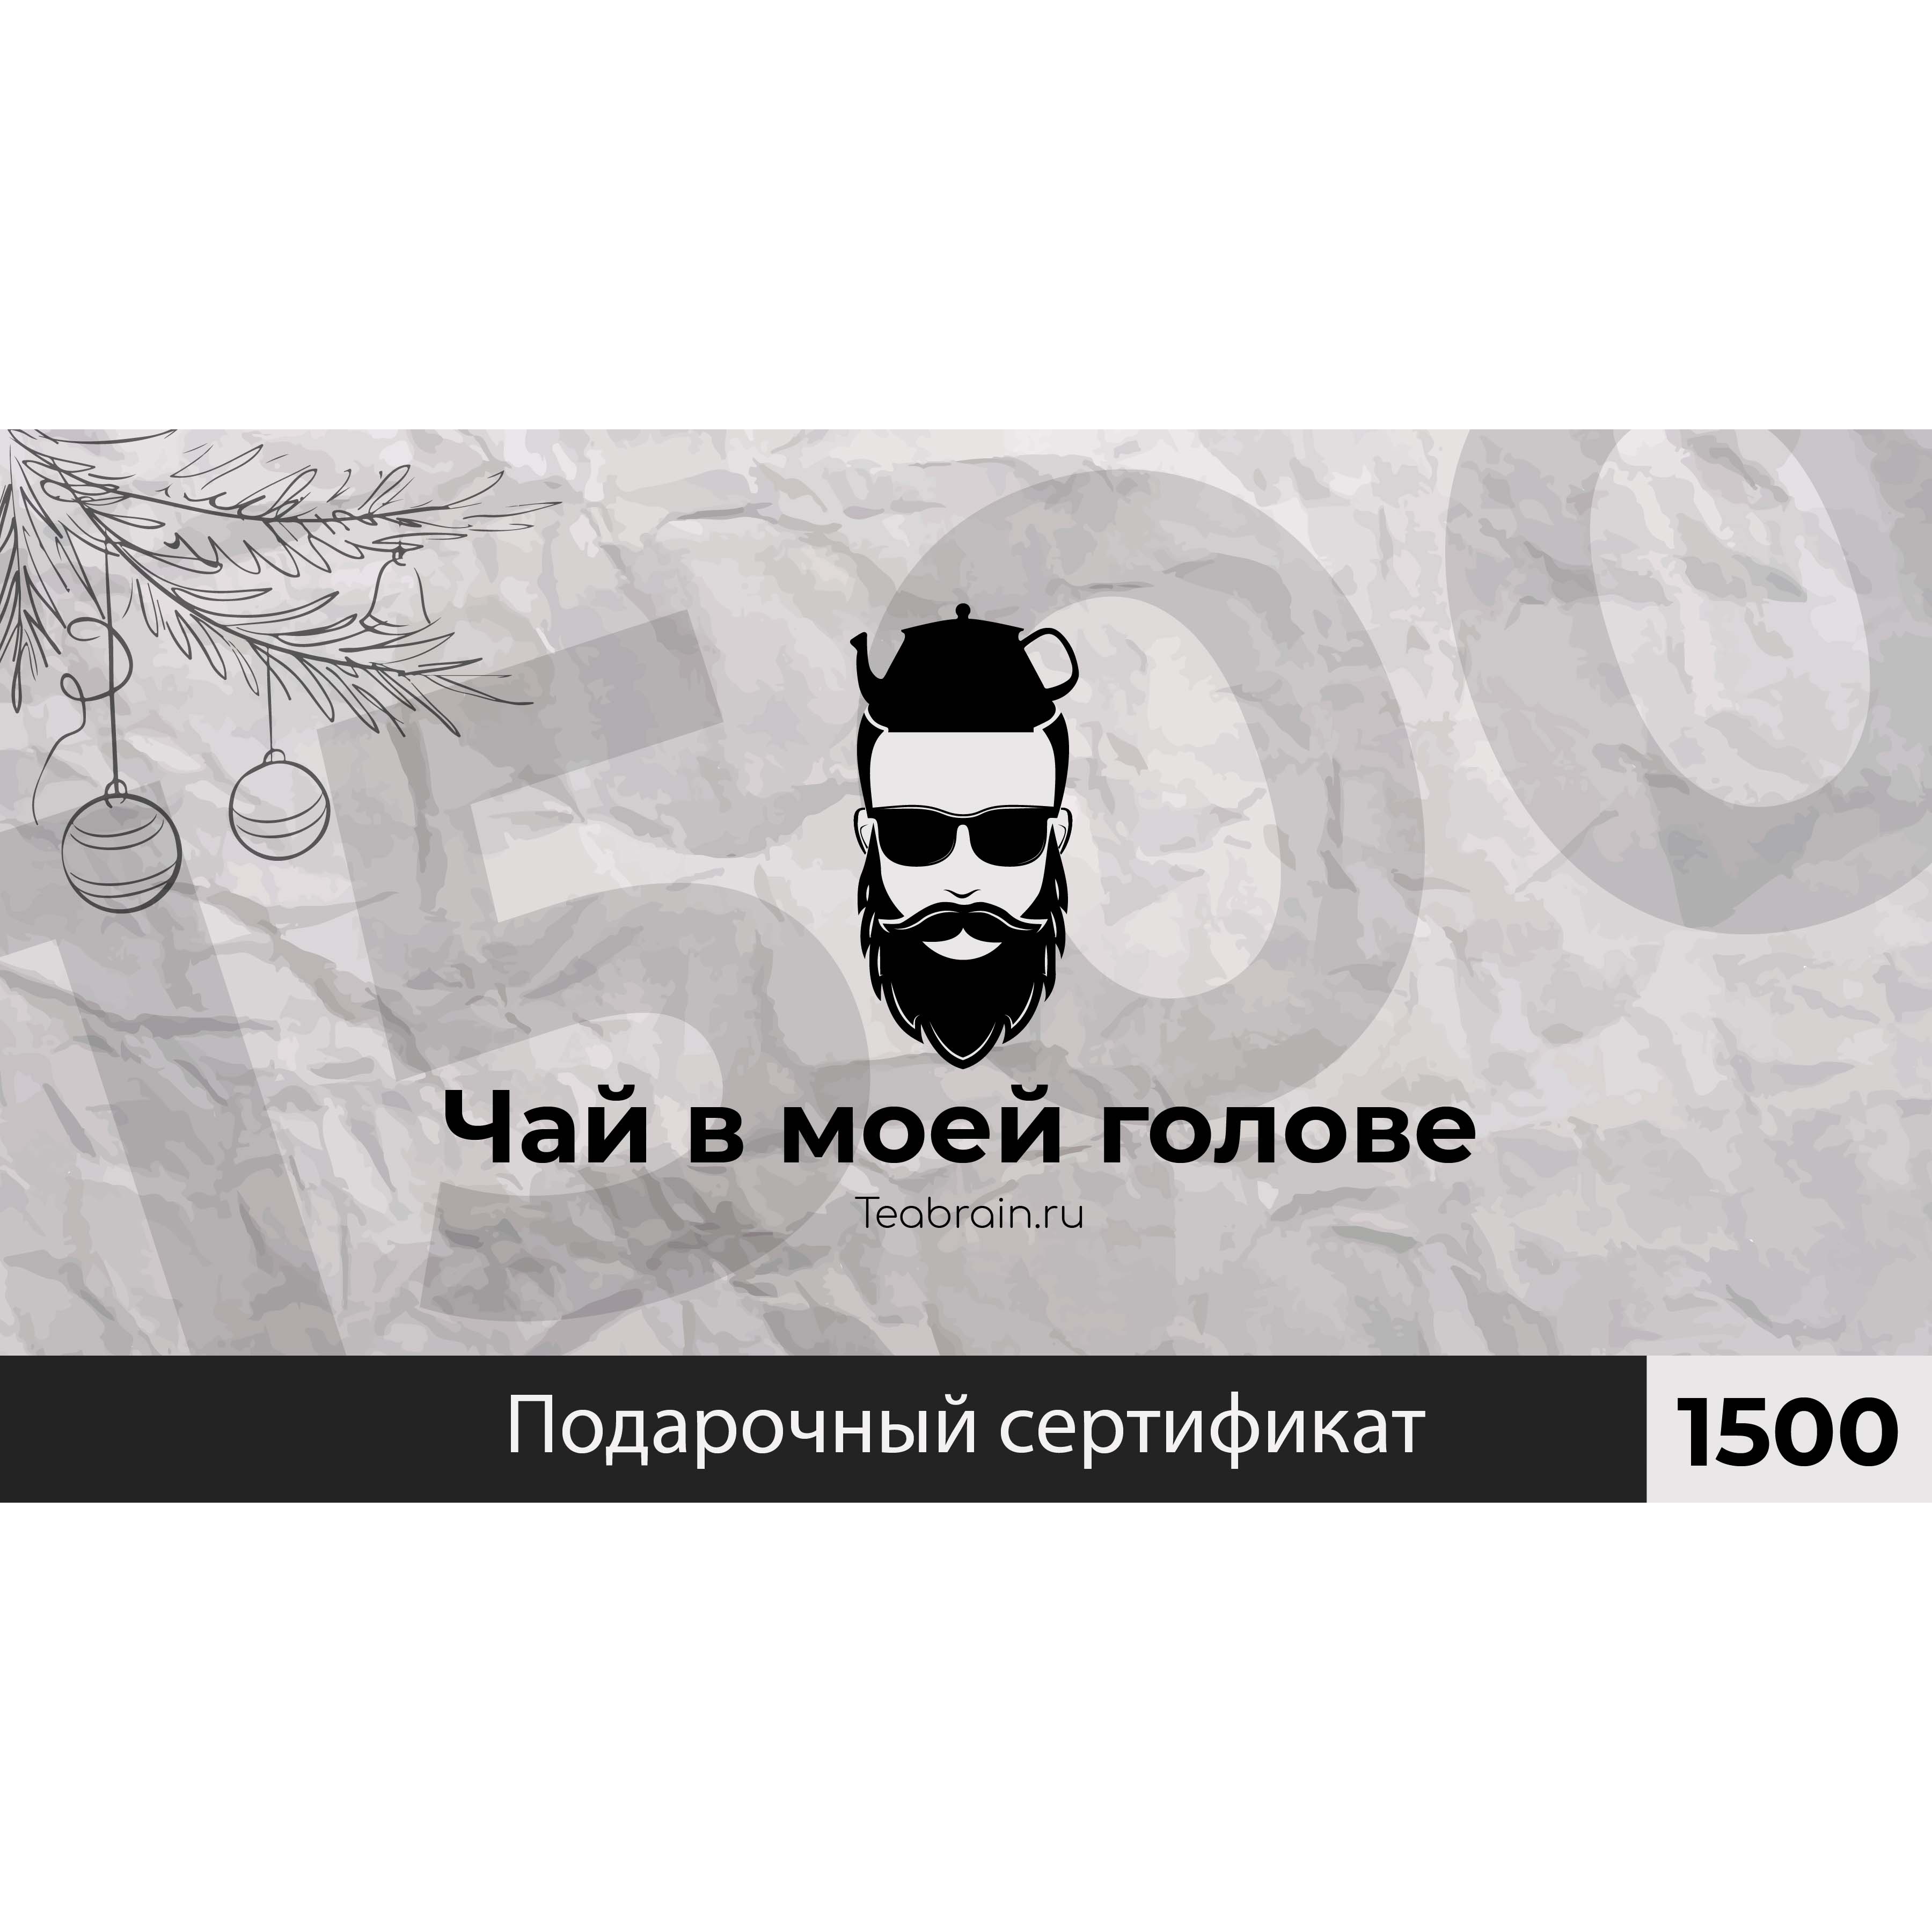 Подарочный сертификат 1500р (цифровой)